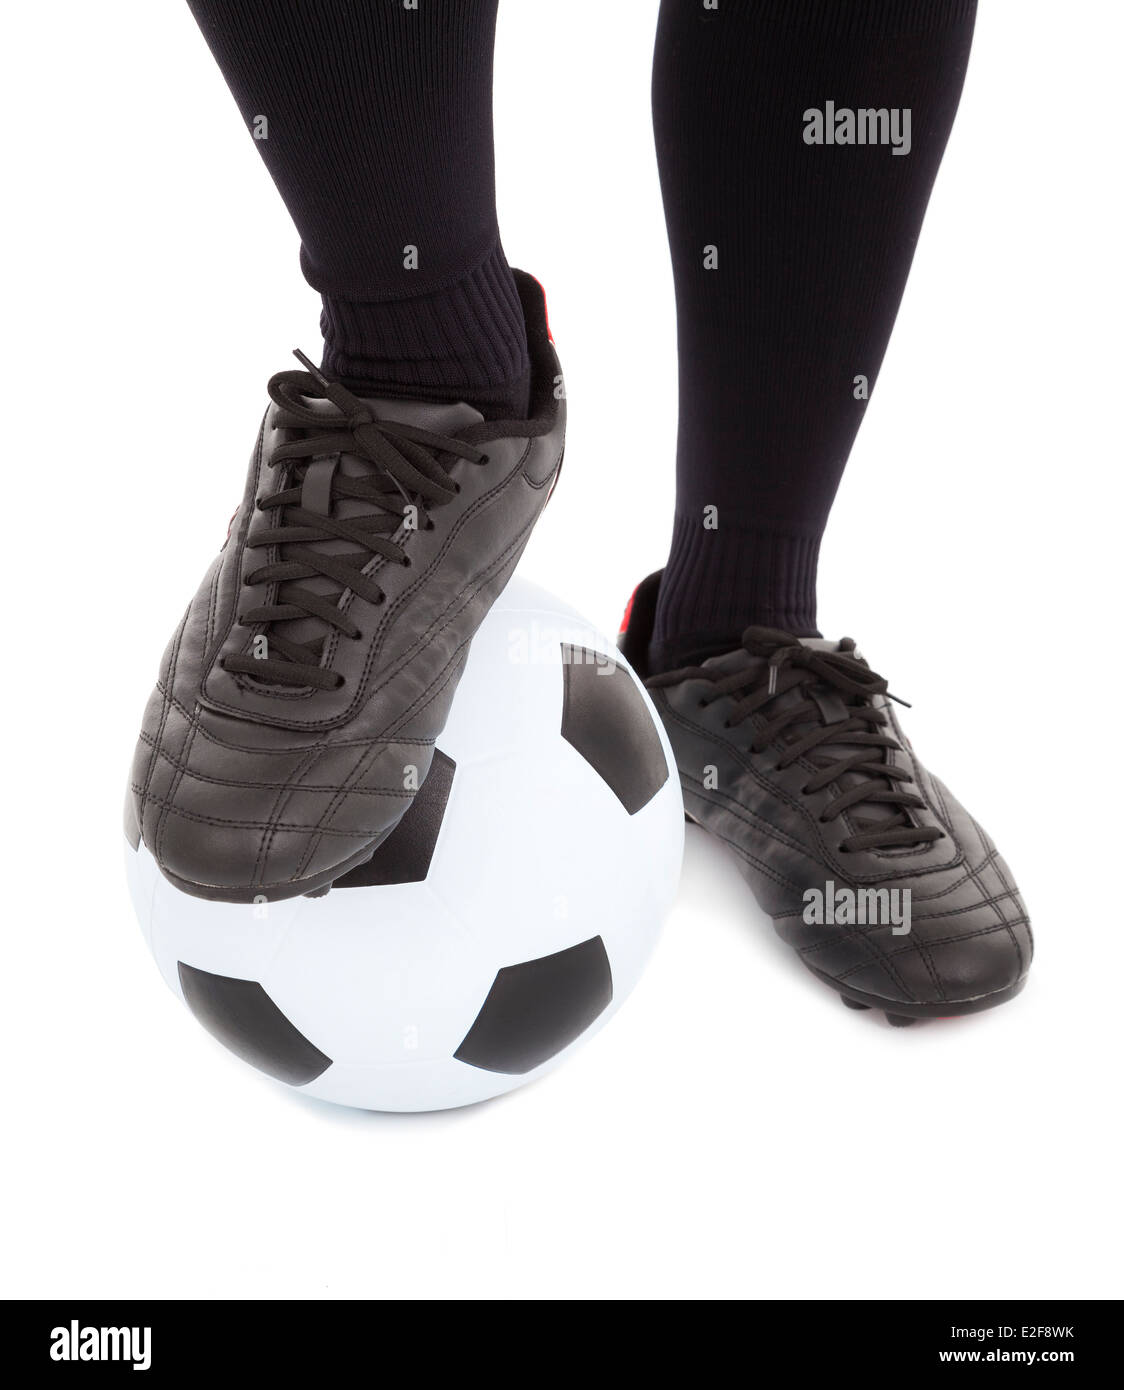 Les pieds de joueur de soccer et de football. isolé sur fond blanc Banque D'Images